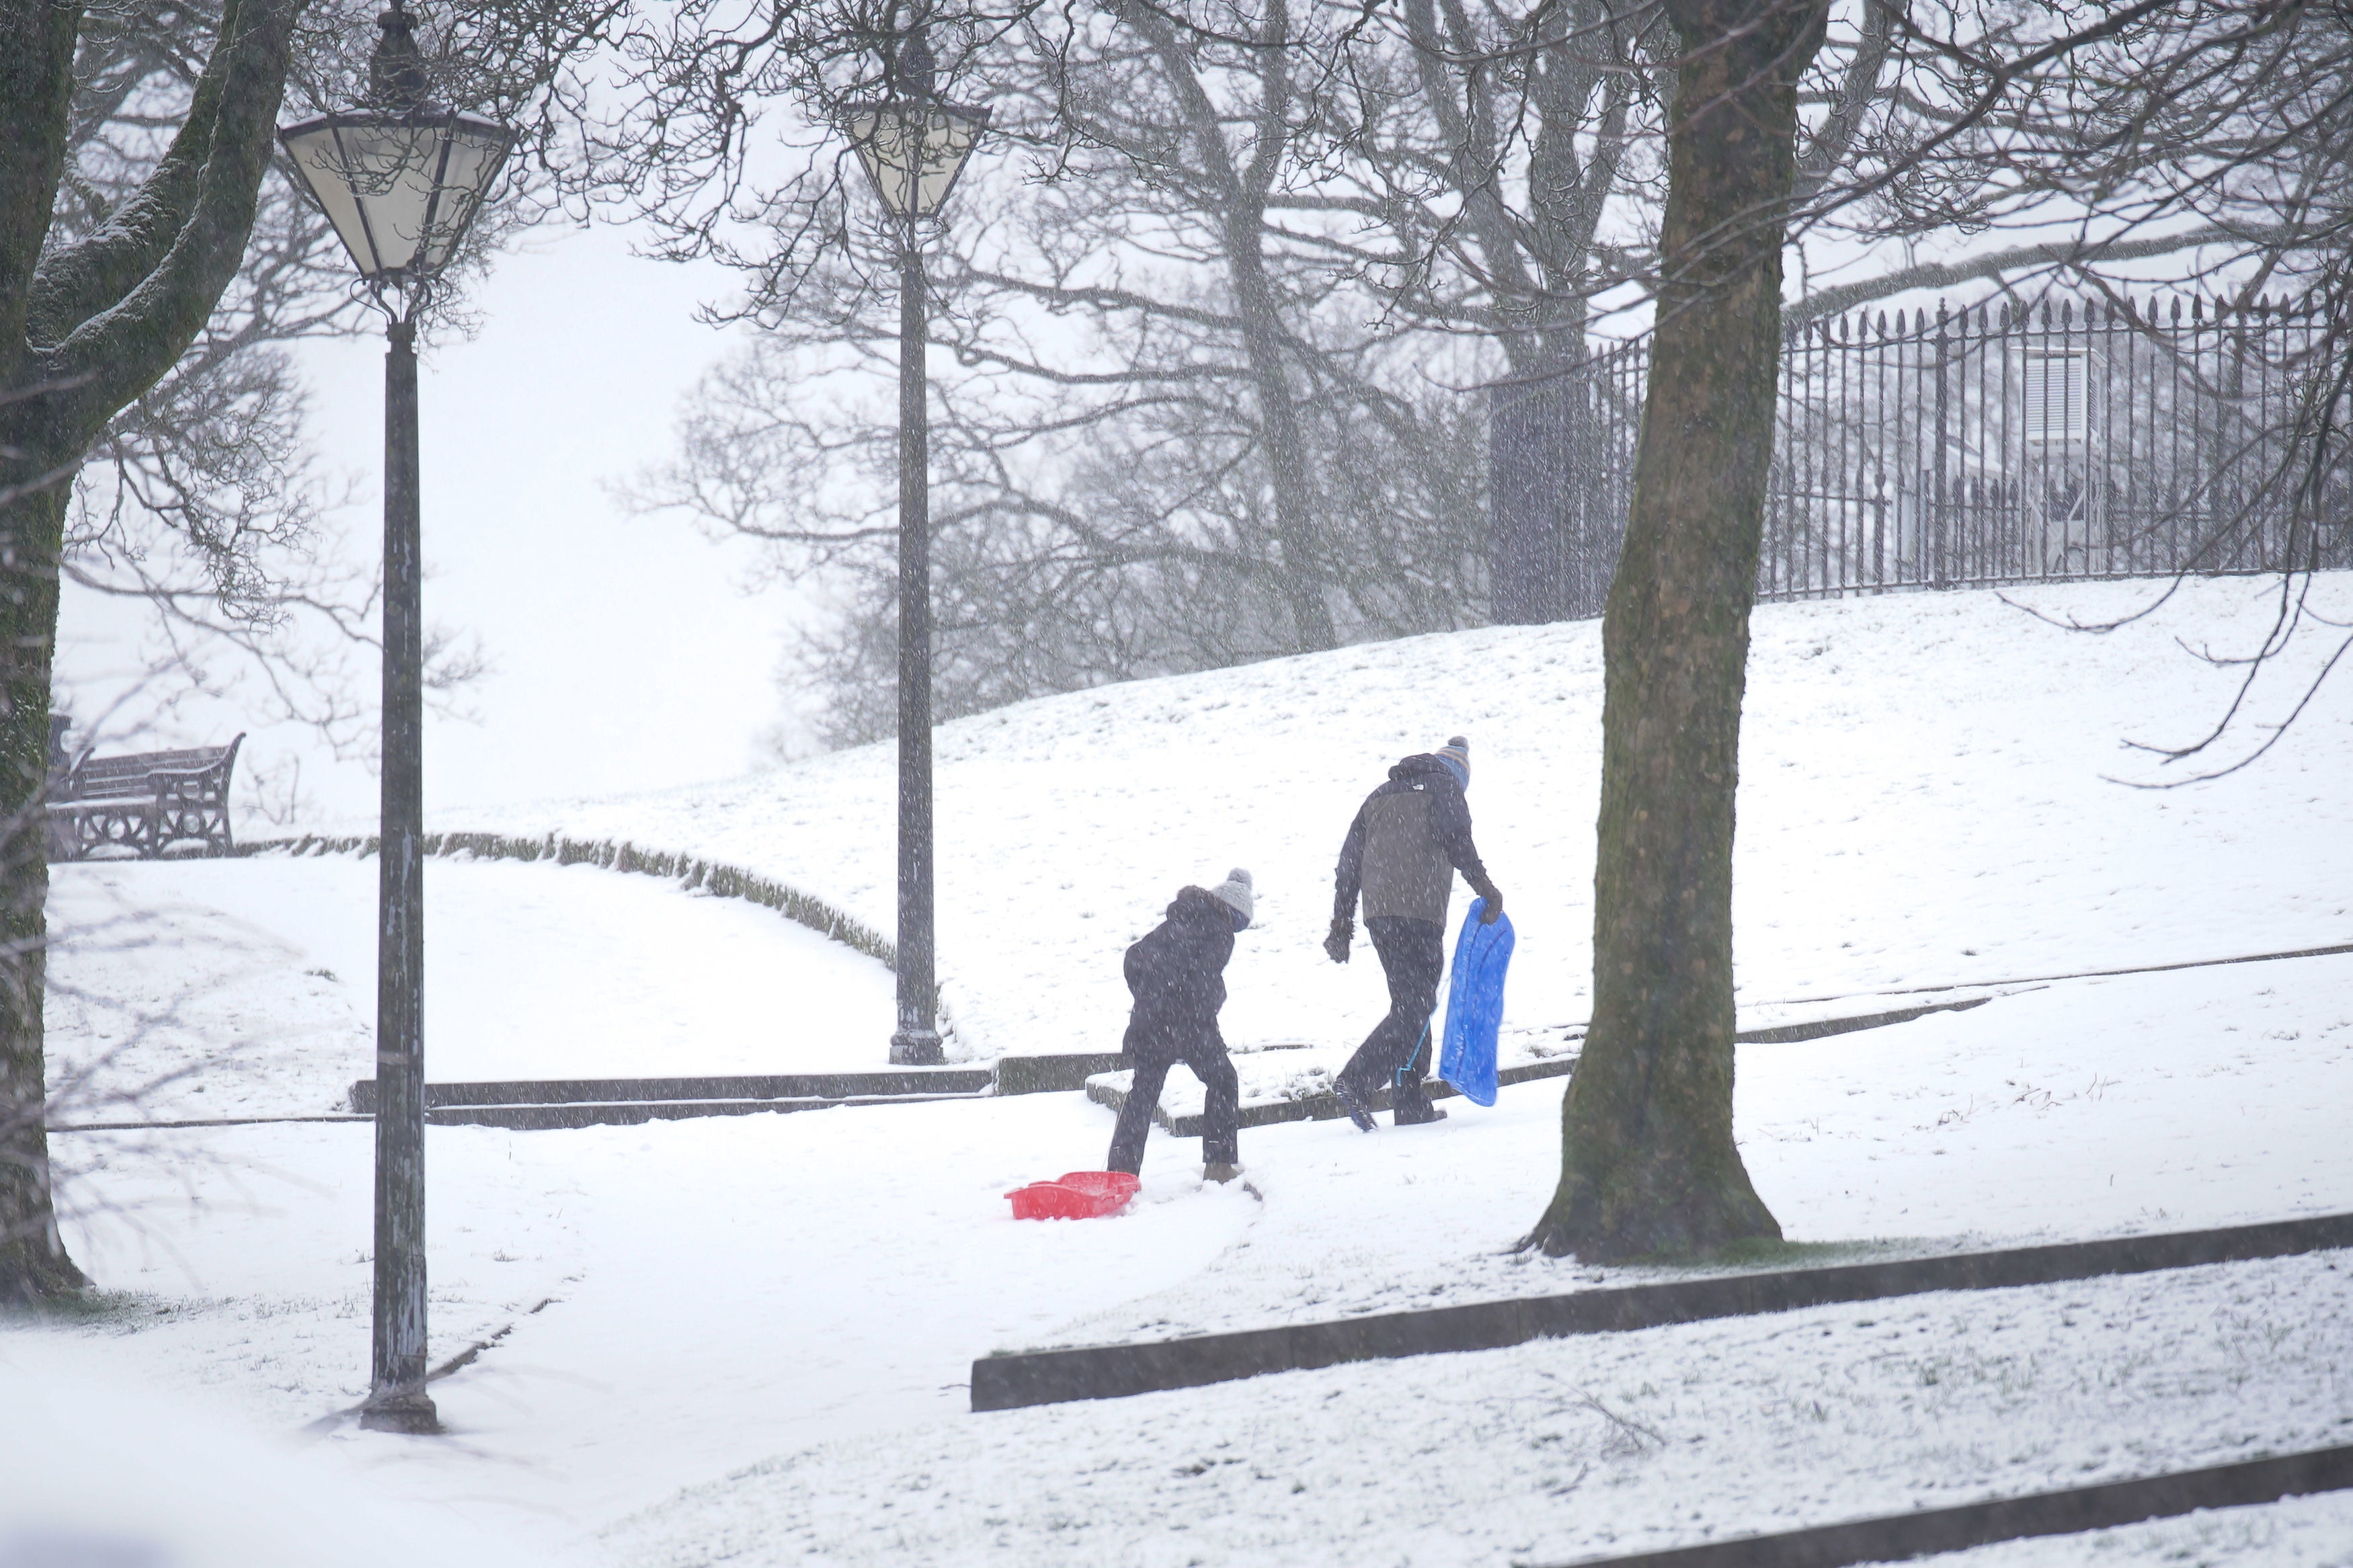 Children sledding in the snow on Thursday morning